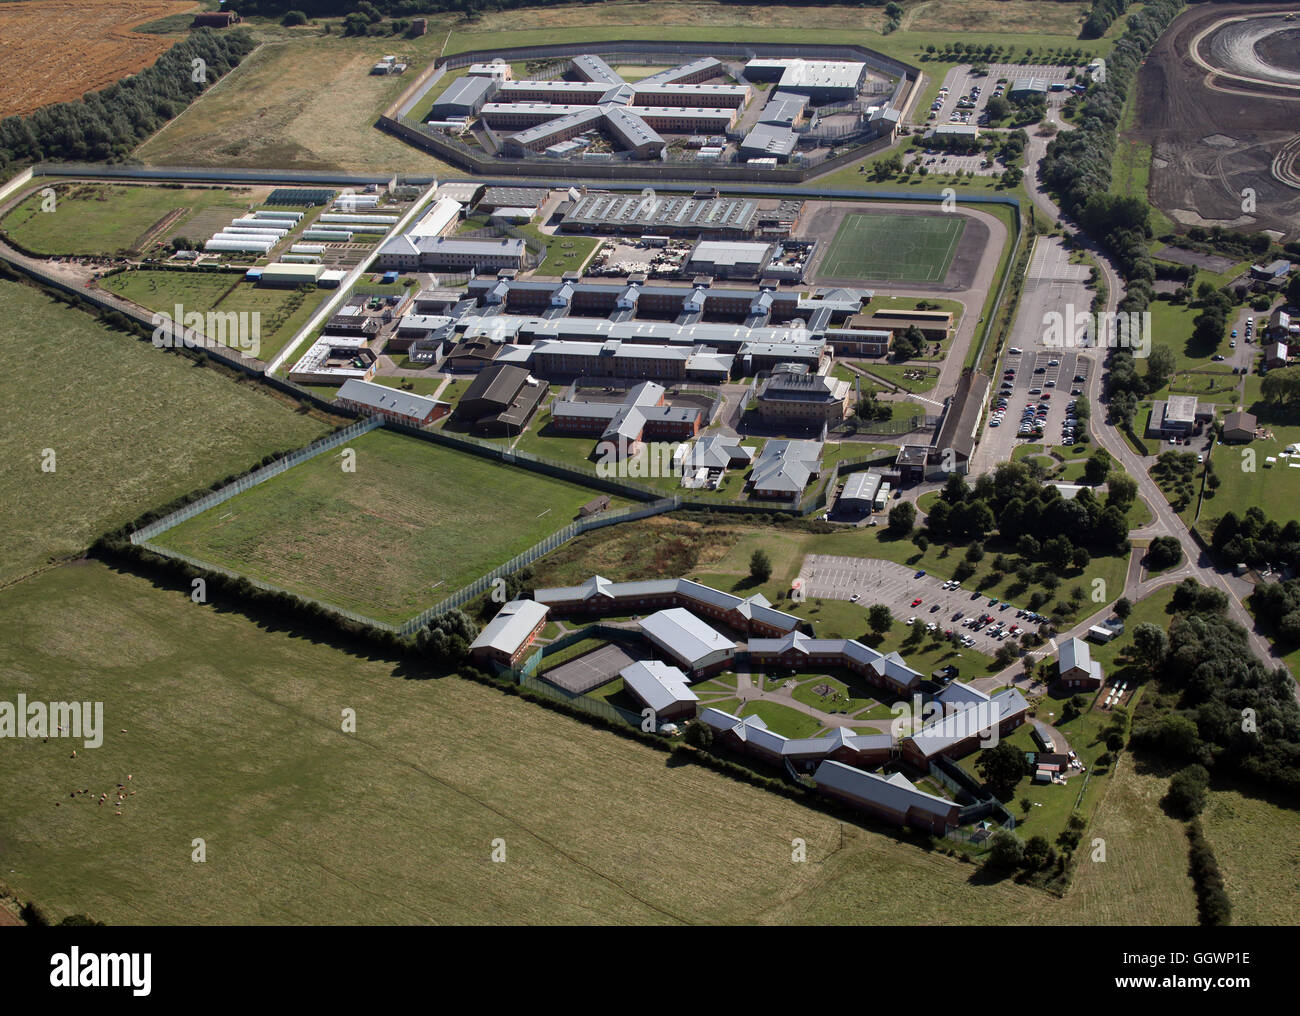 Vue aérienne de Rainsbrook Secure Training Centre, HMP Onley & HMP Rye Hill près de Rugby, Royaume-Uni Banque D'Images